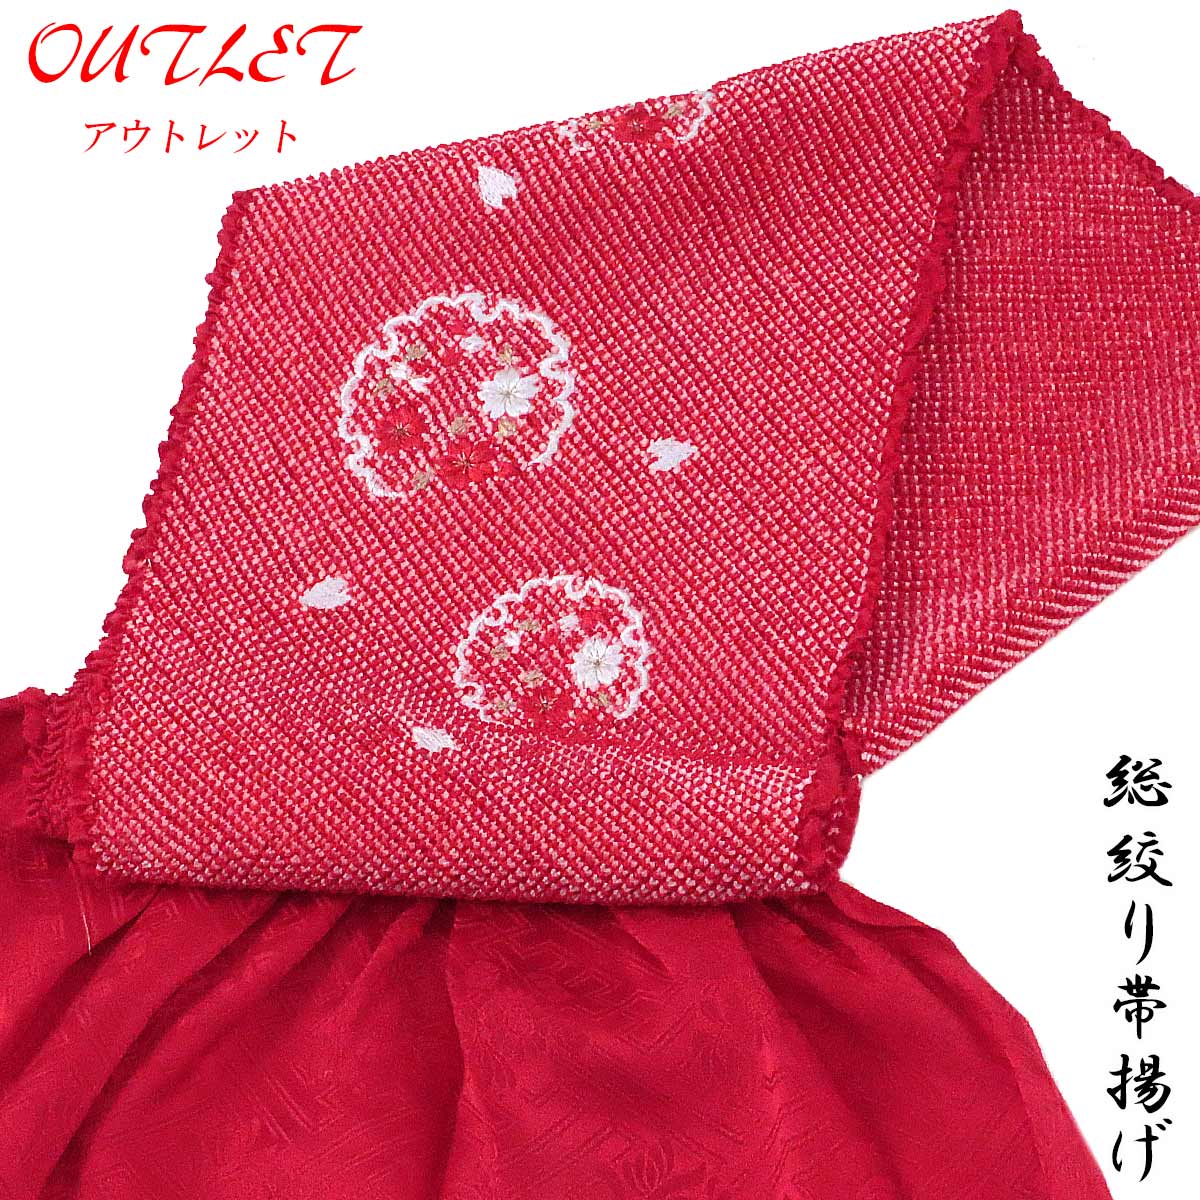 【訳あり】 総絞り帯揚げ 振袖用 -2N- 正絹 鹿の子絞り 四つ巻き 刺繍入り 絹100% 紅赤